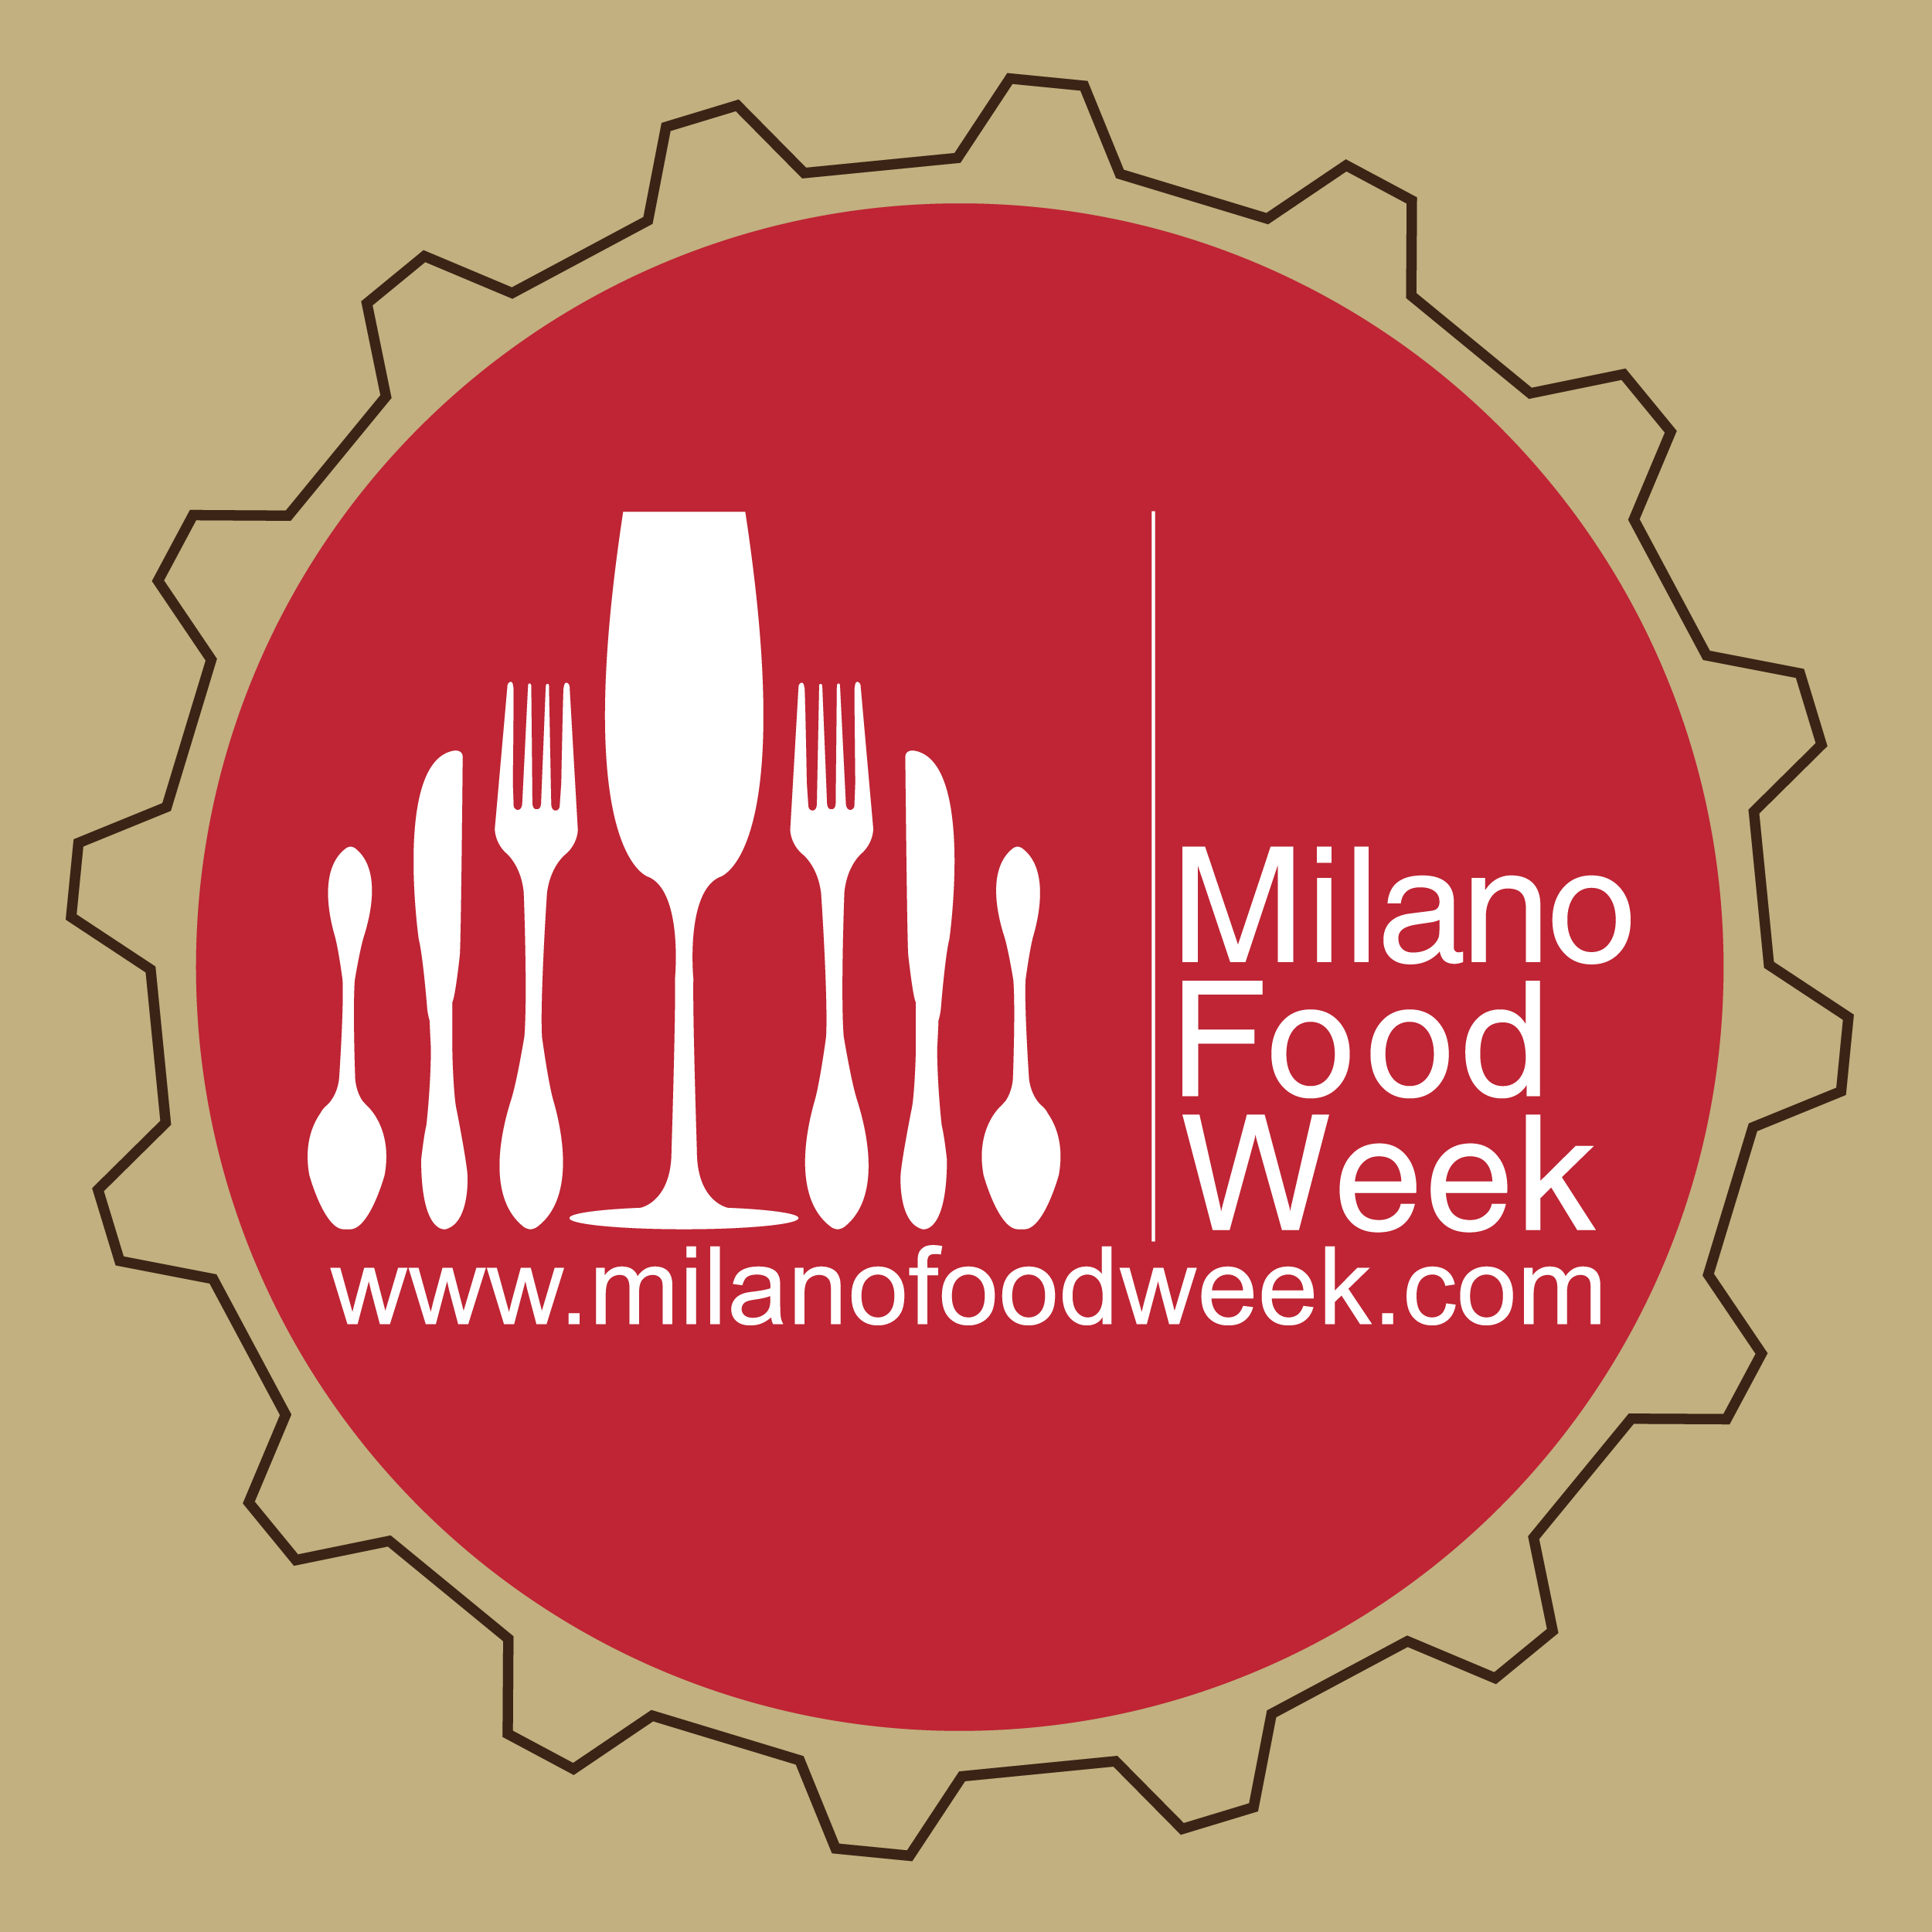 Milano Food Week